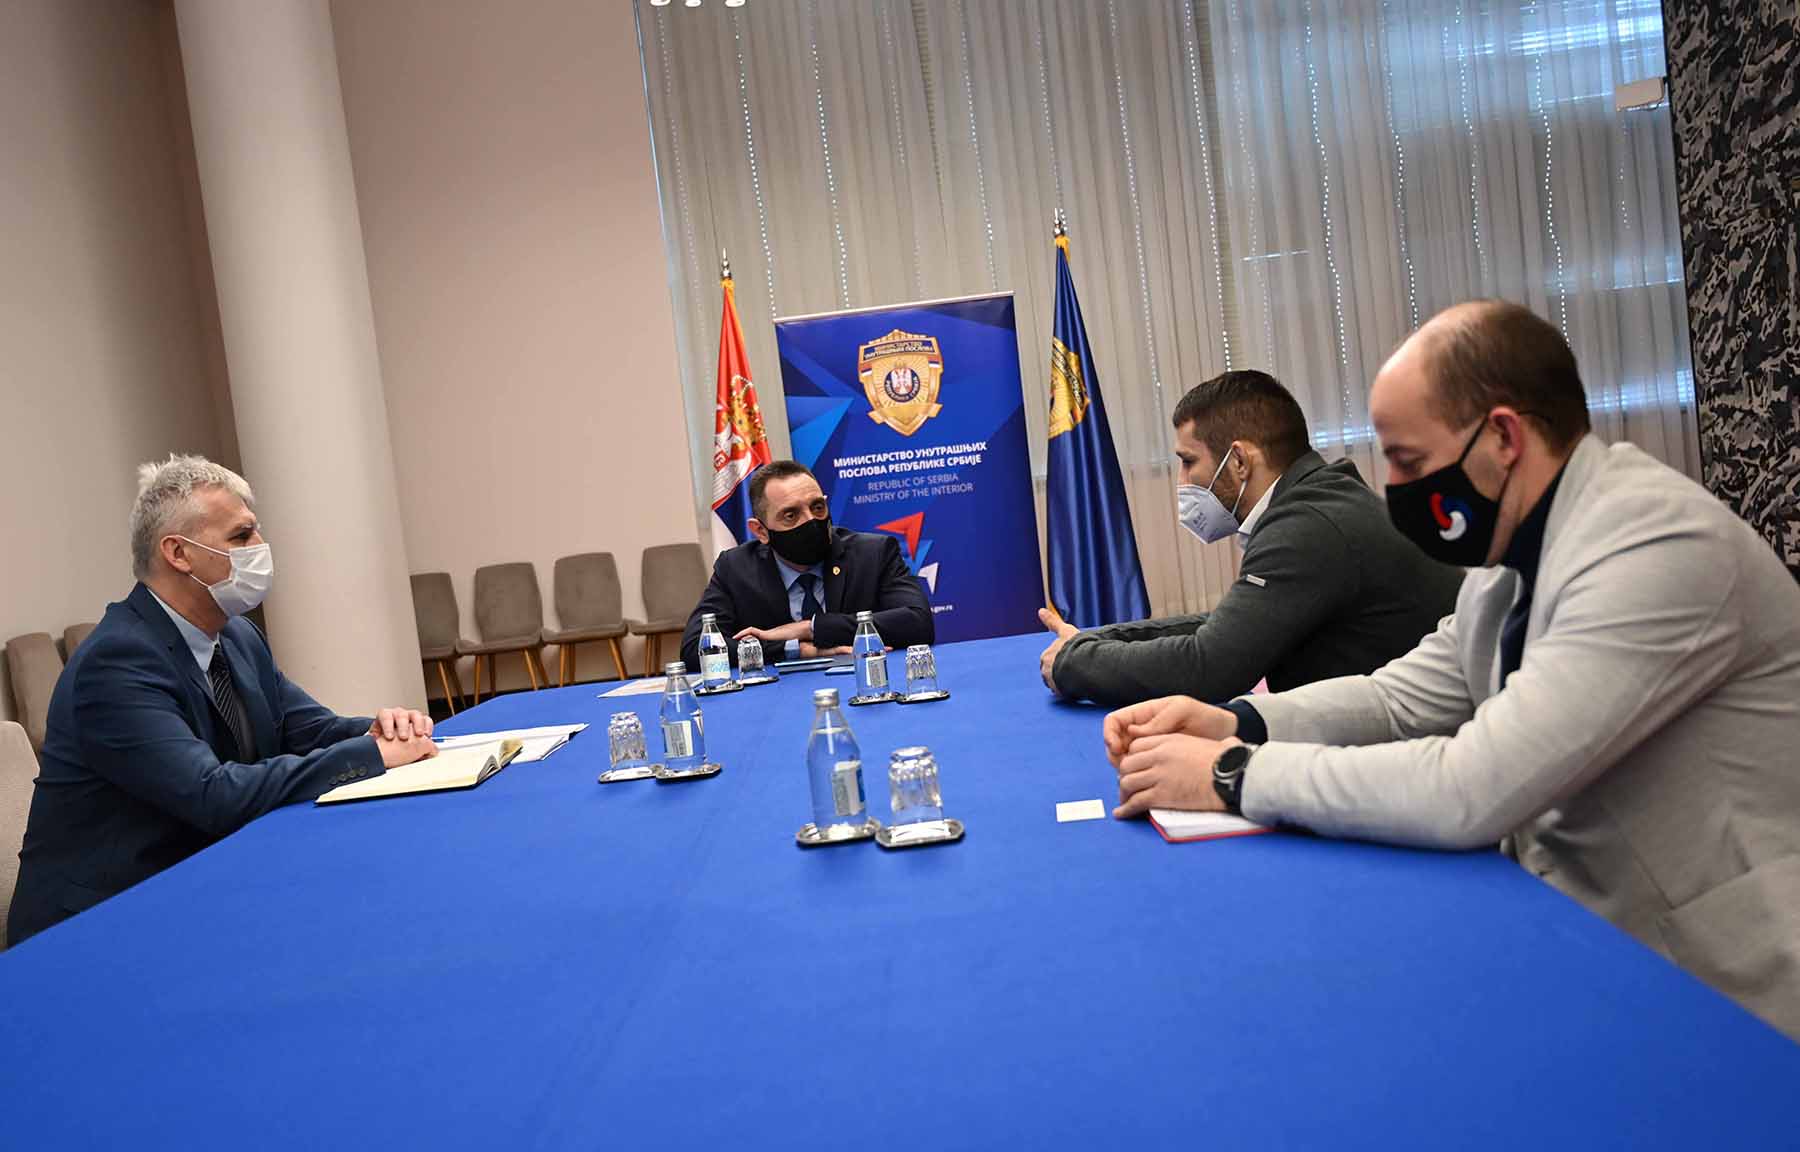 Министар Вулин разговарао са Штефанеком о могућностима сарадње у области спорта